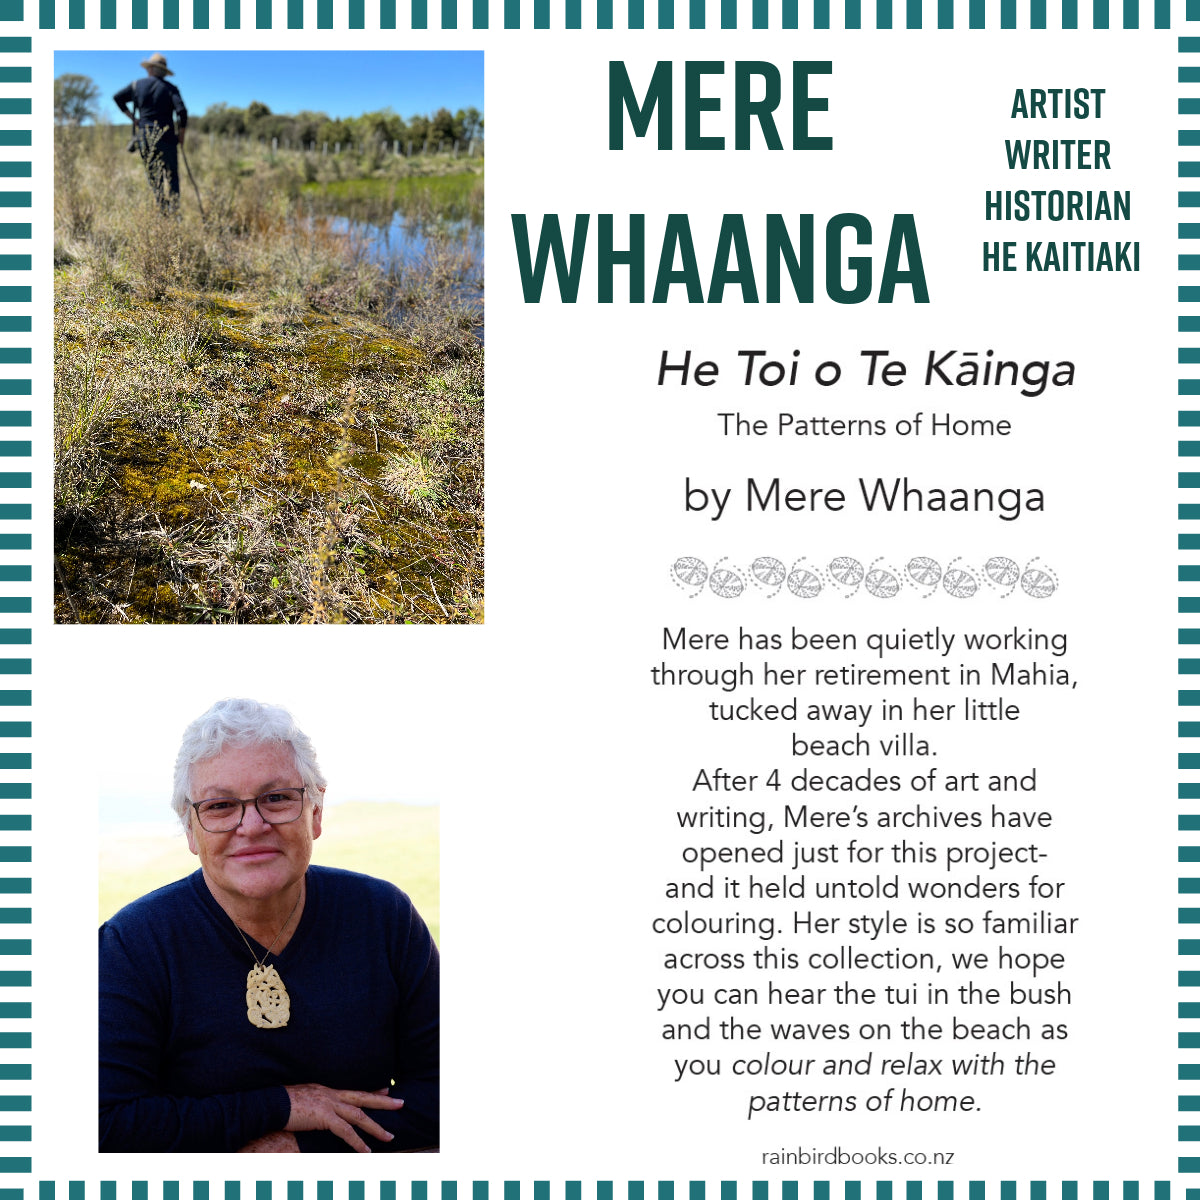 Book - He Toi o Te Kainga, The Patterns of Home